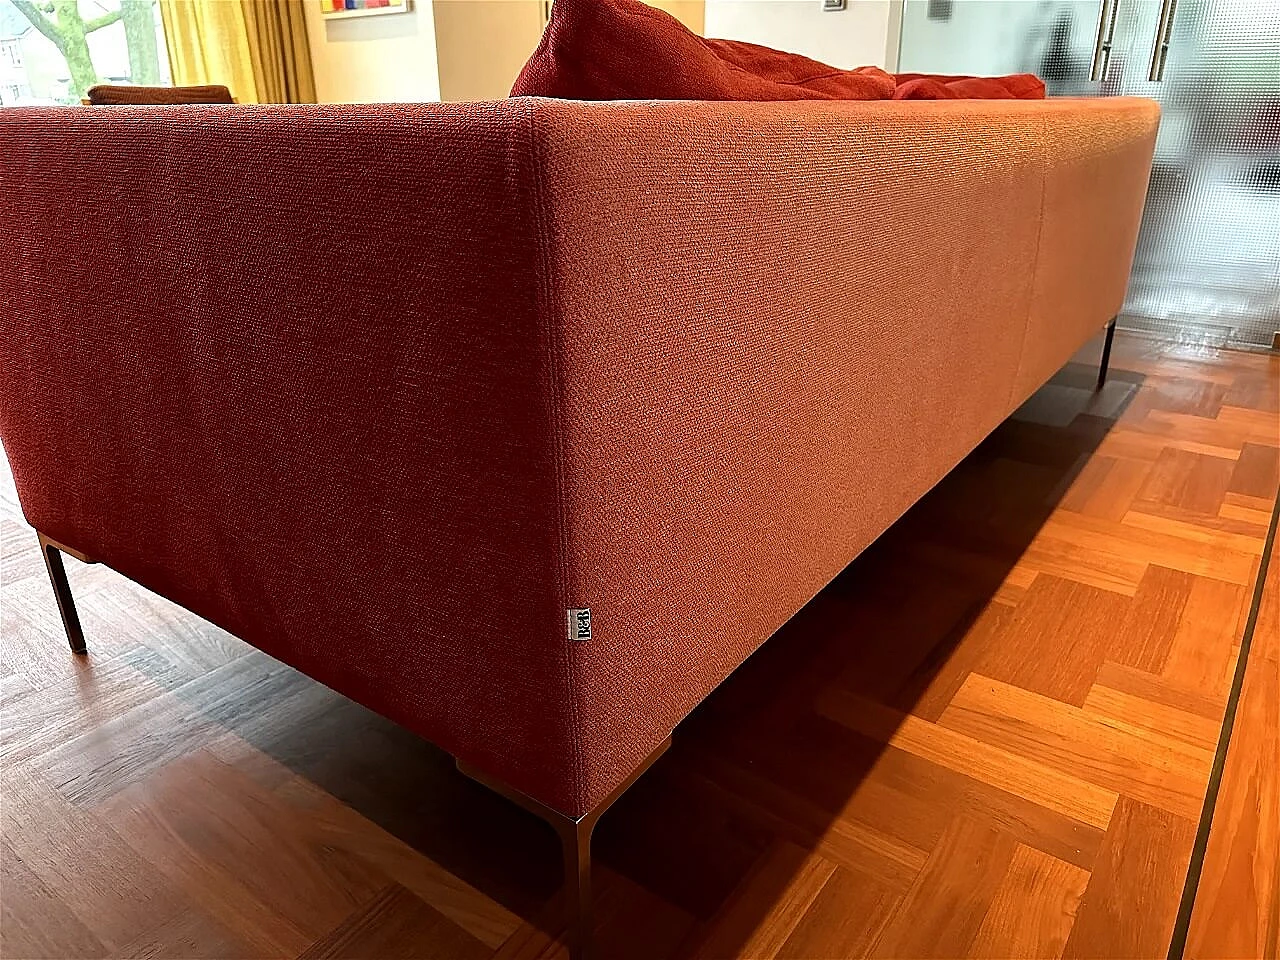 CH228 Charles sofa in red Maxalto-Cat cotton by Antonio Citterio for B&B Italia 4